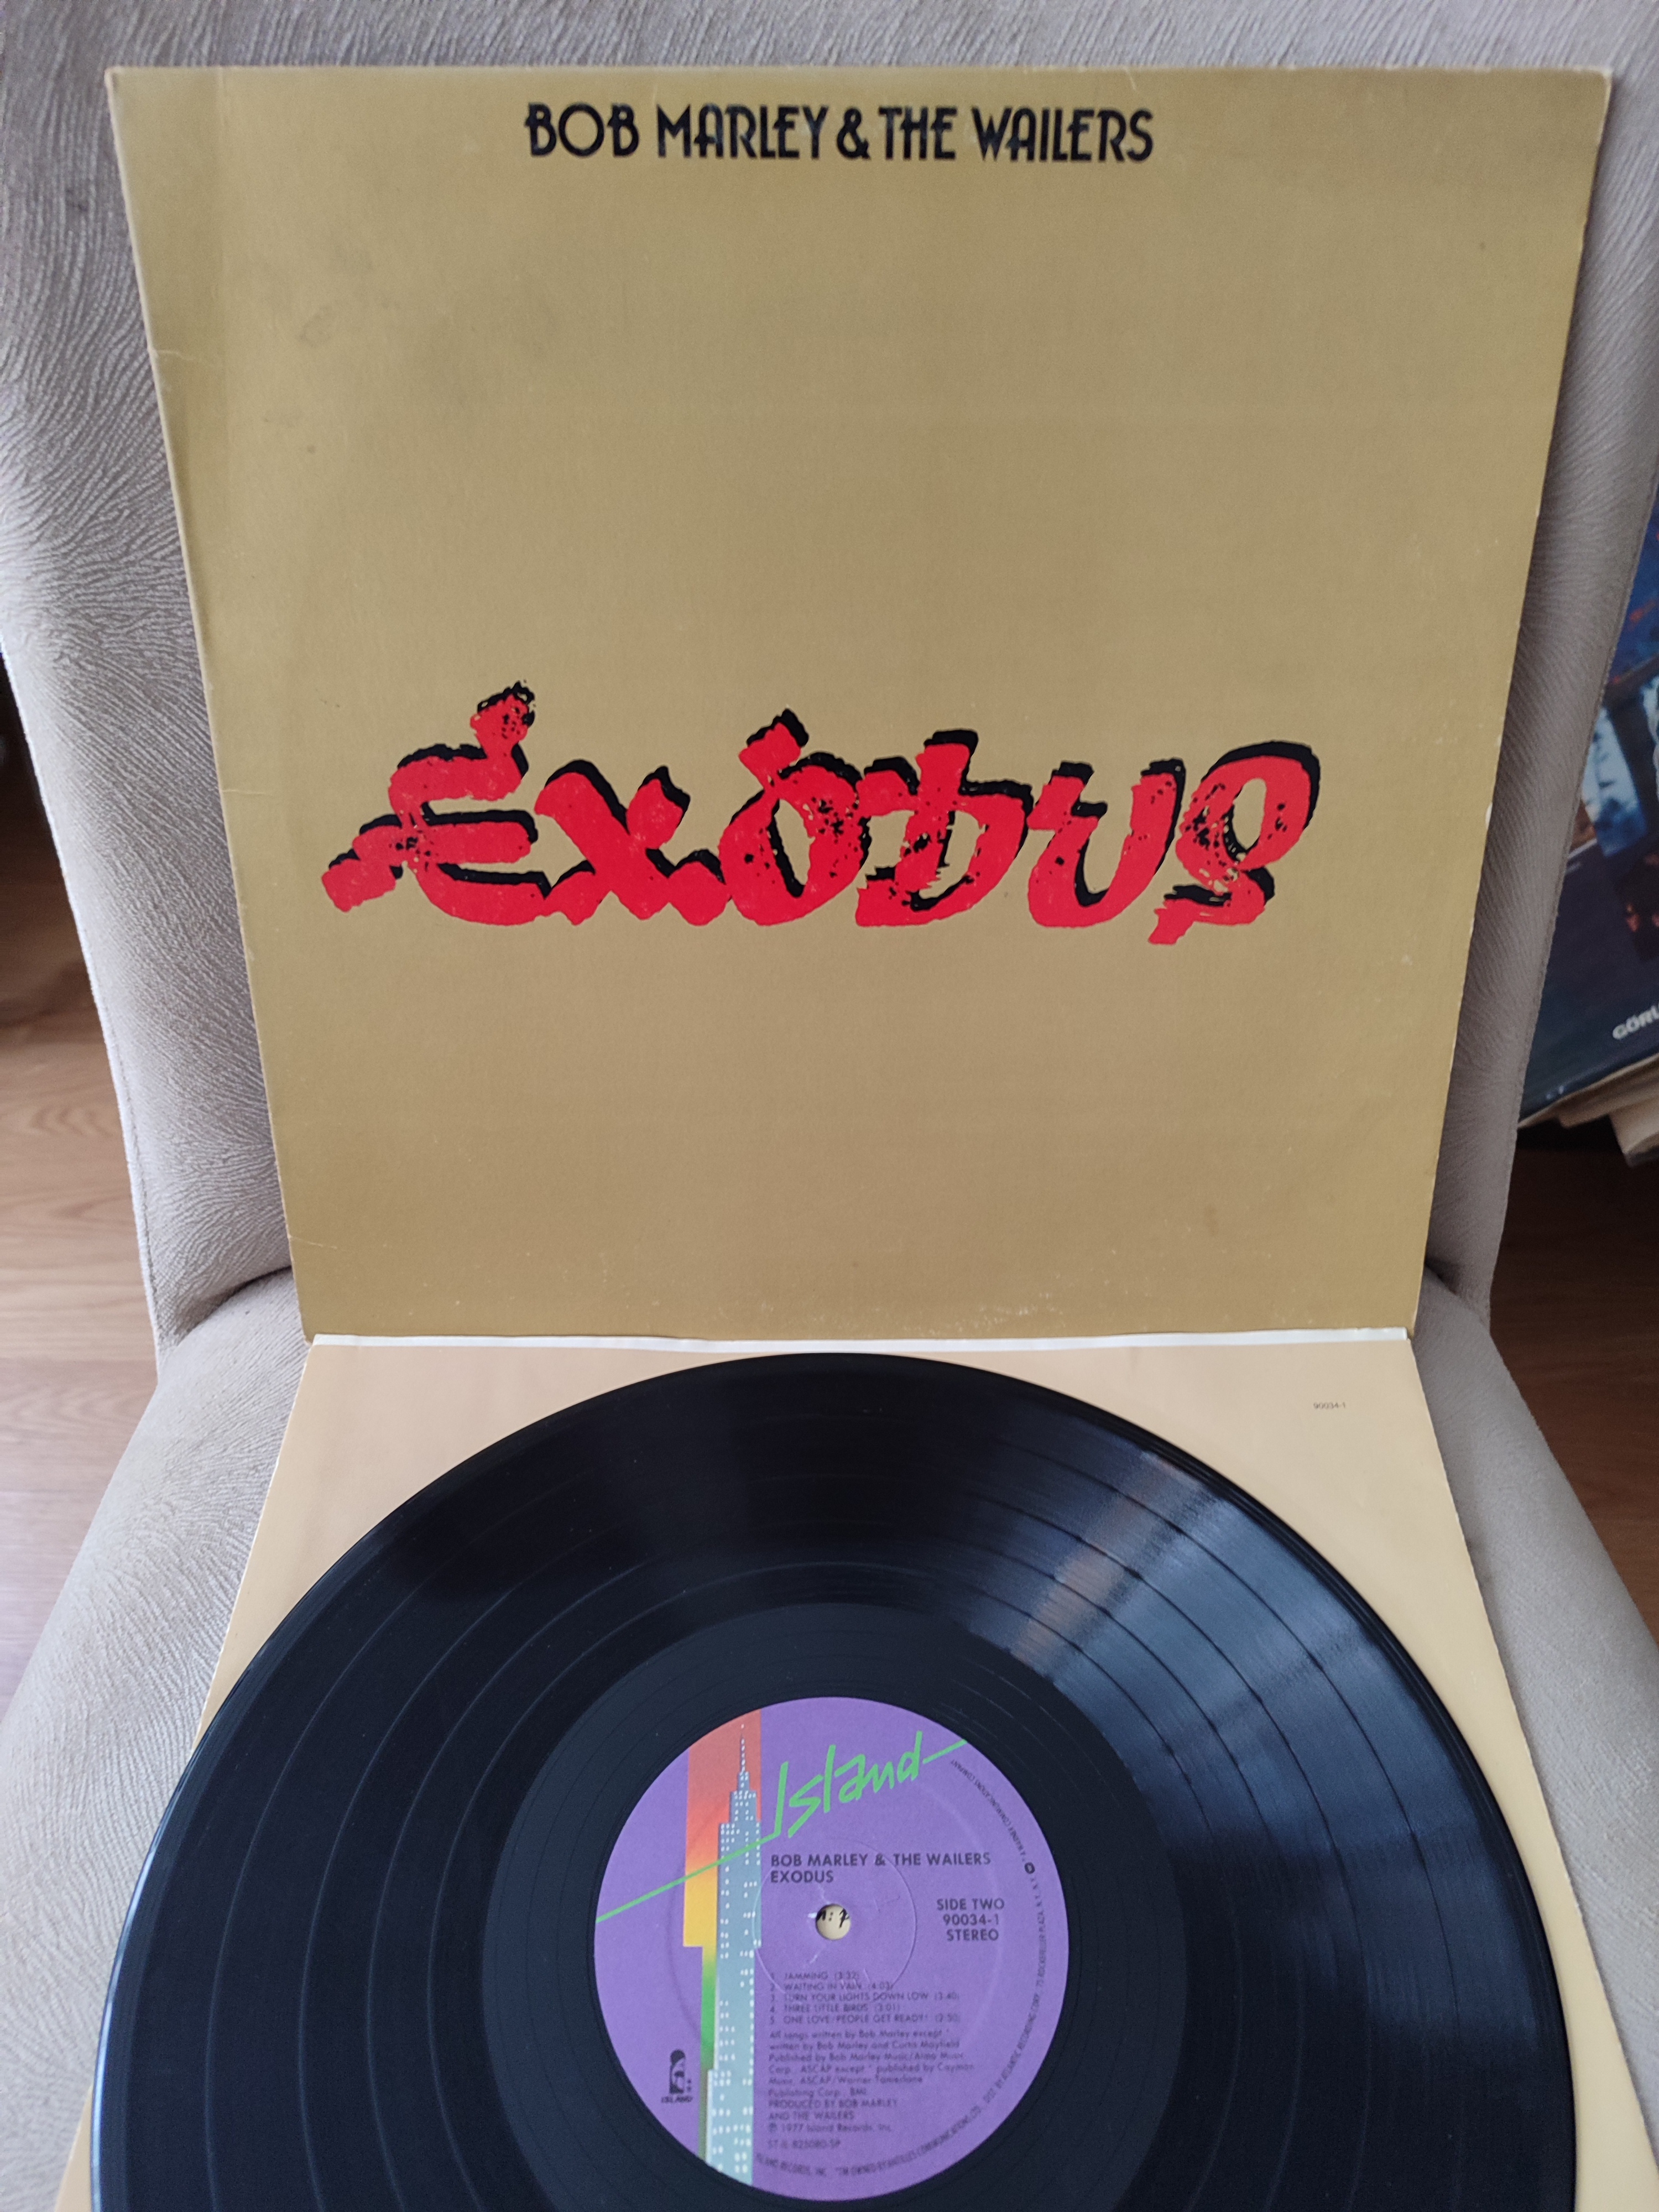 BOB MARLEY & THE WAILERS - Exodus 1983 USA Basım Albüm - 33lük LP Plak 2. el